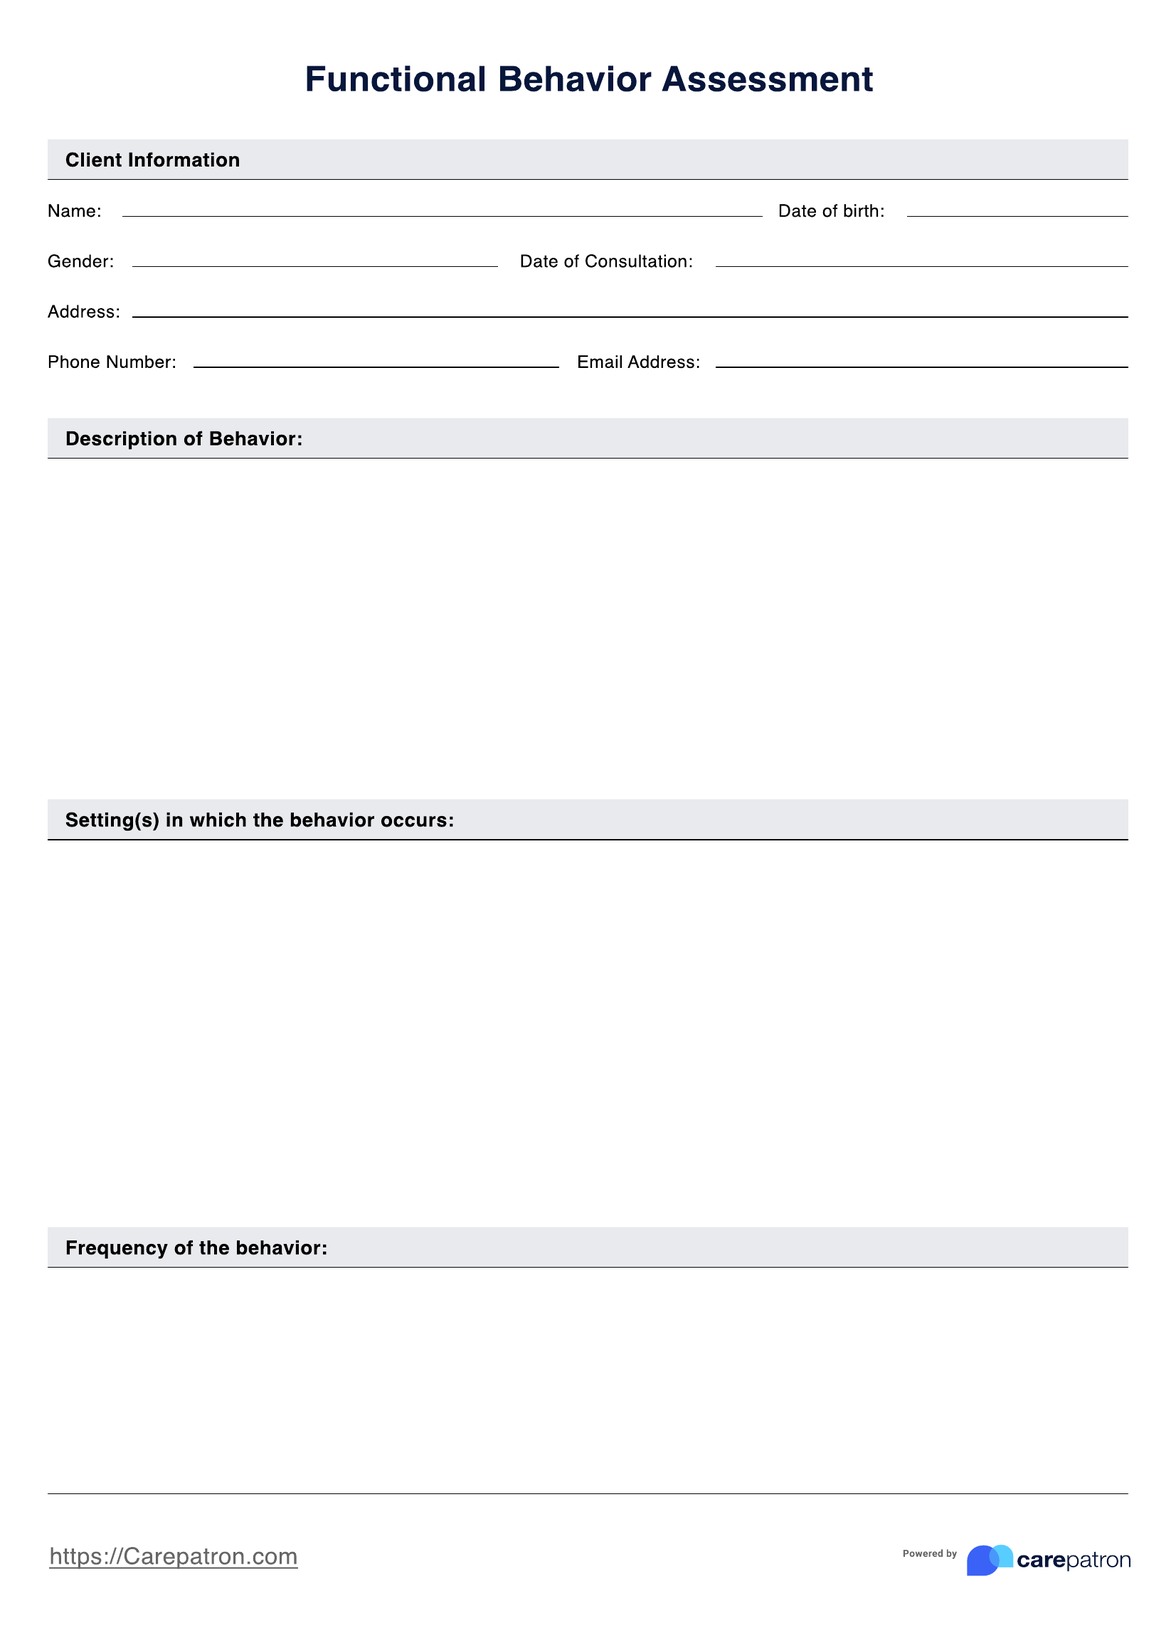 Functional Behavior Assessment PDF Example